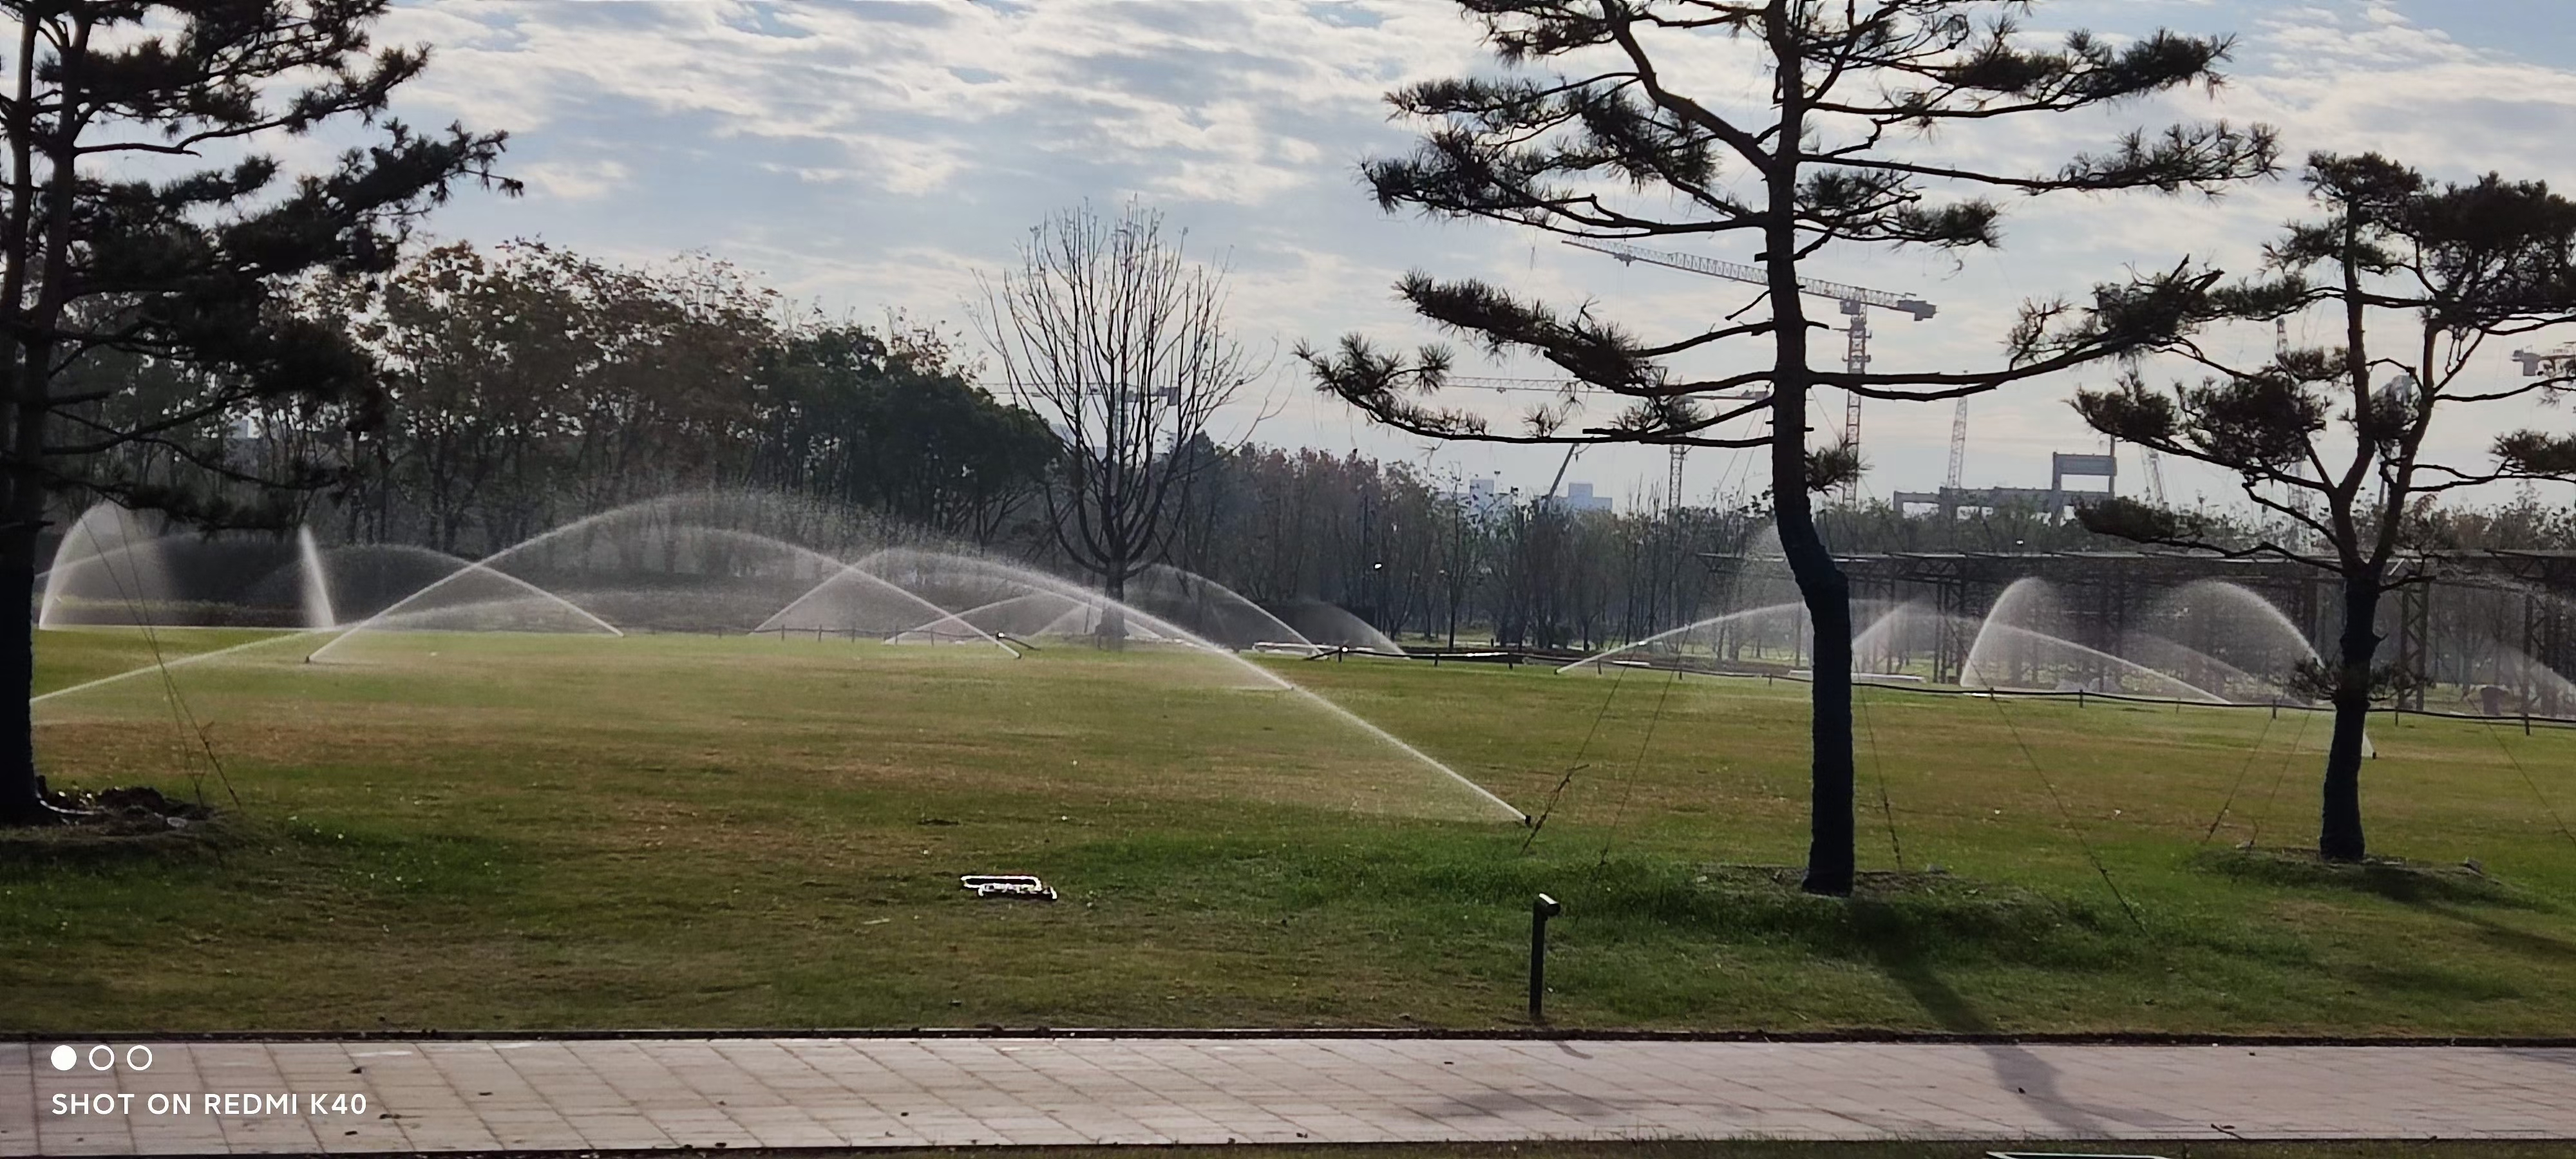 Design of Sprinkler Irrigation System